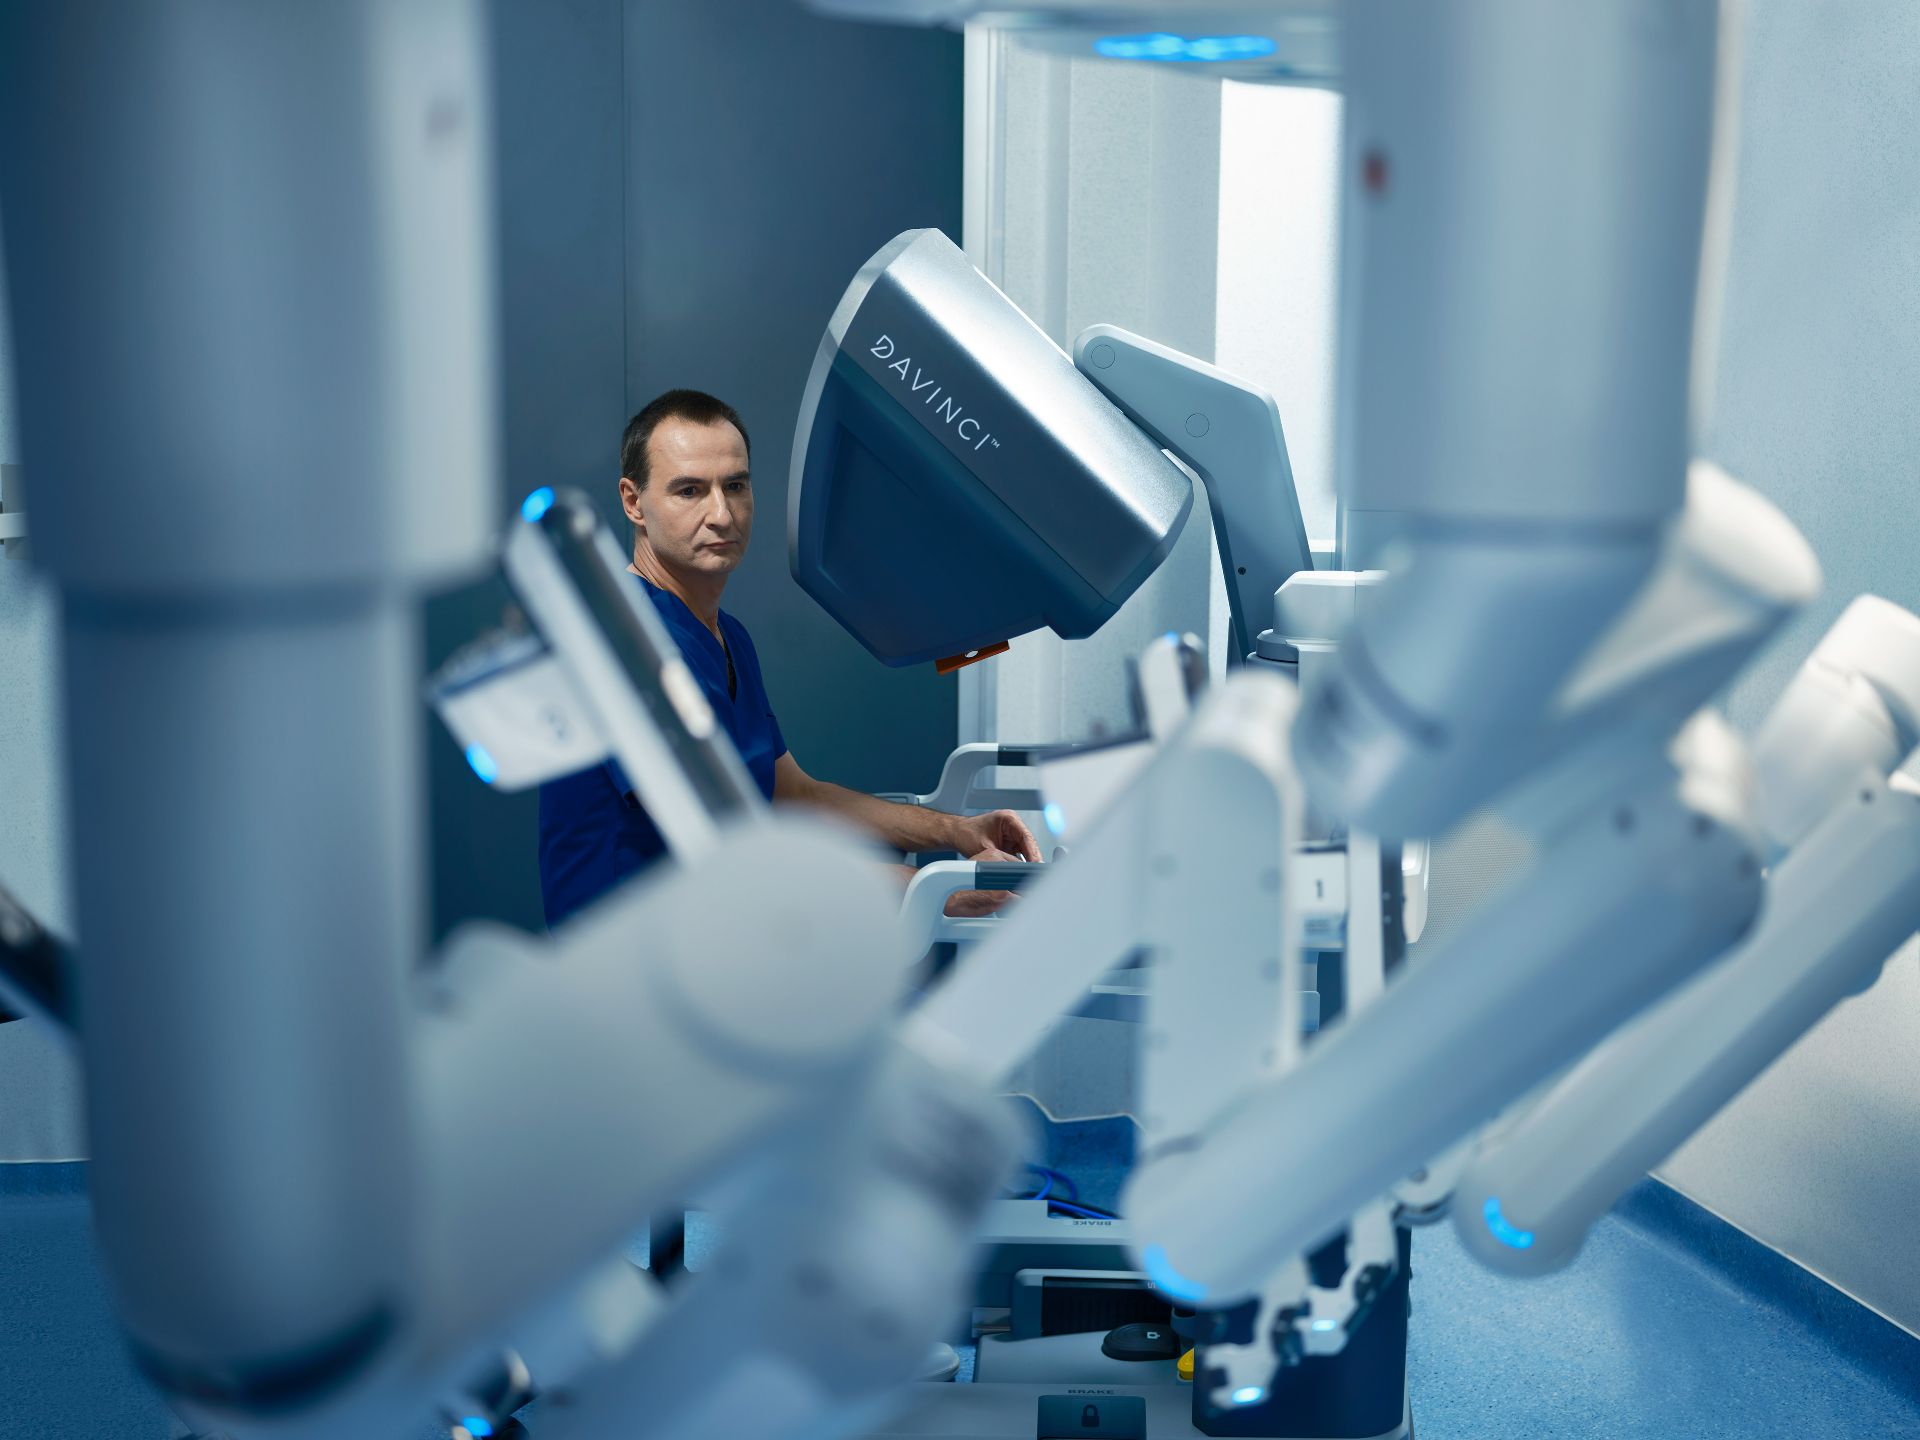 Operație robotică cu sistemul da Vinci Xi pentru tratarea unei hernii incizionale complexe